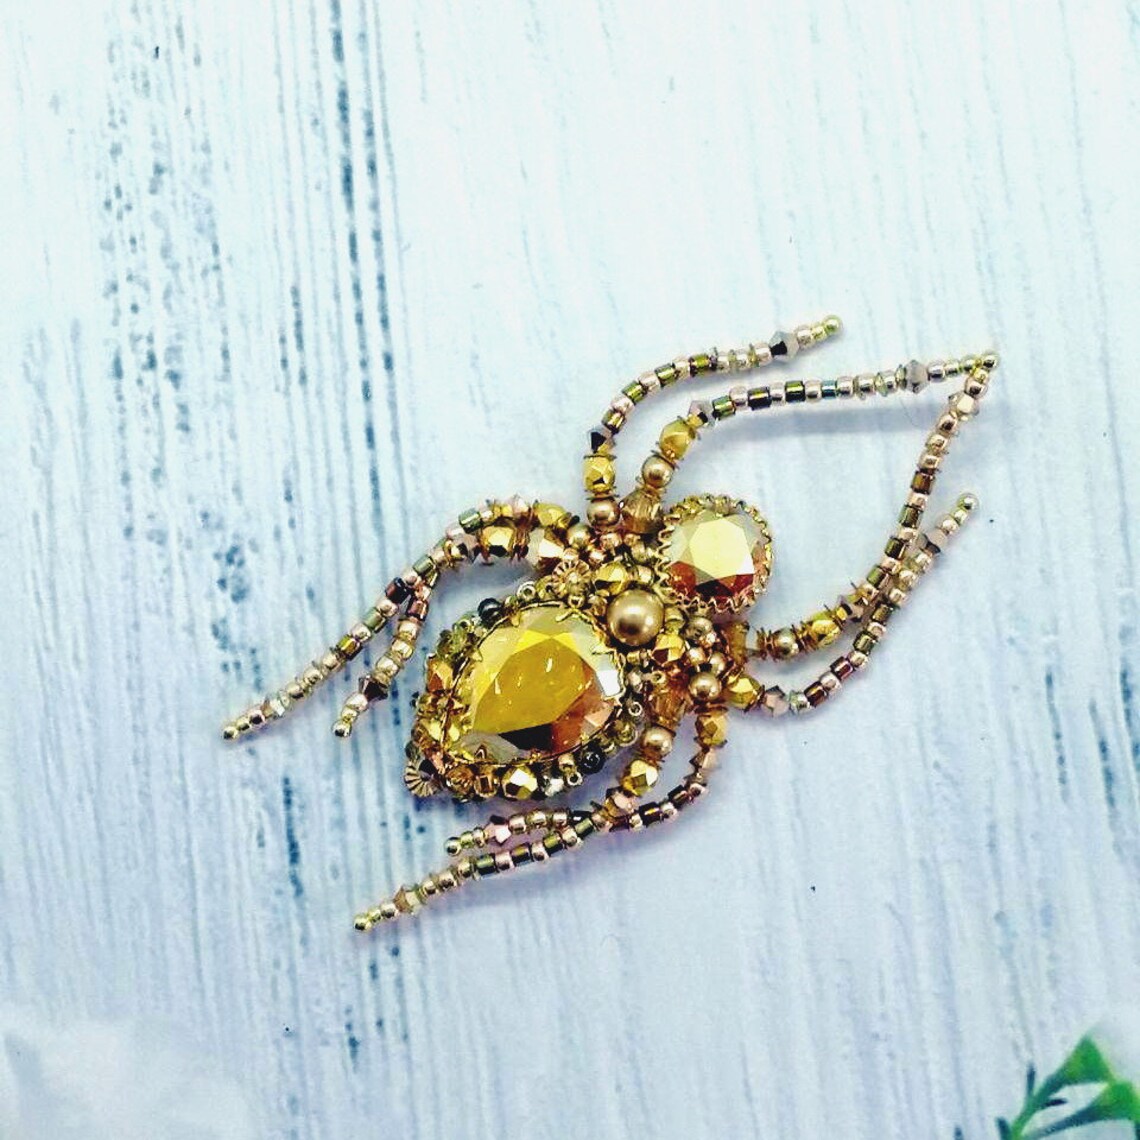 Gold spider bead brooch with Swarovski crystals | Etsy